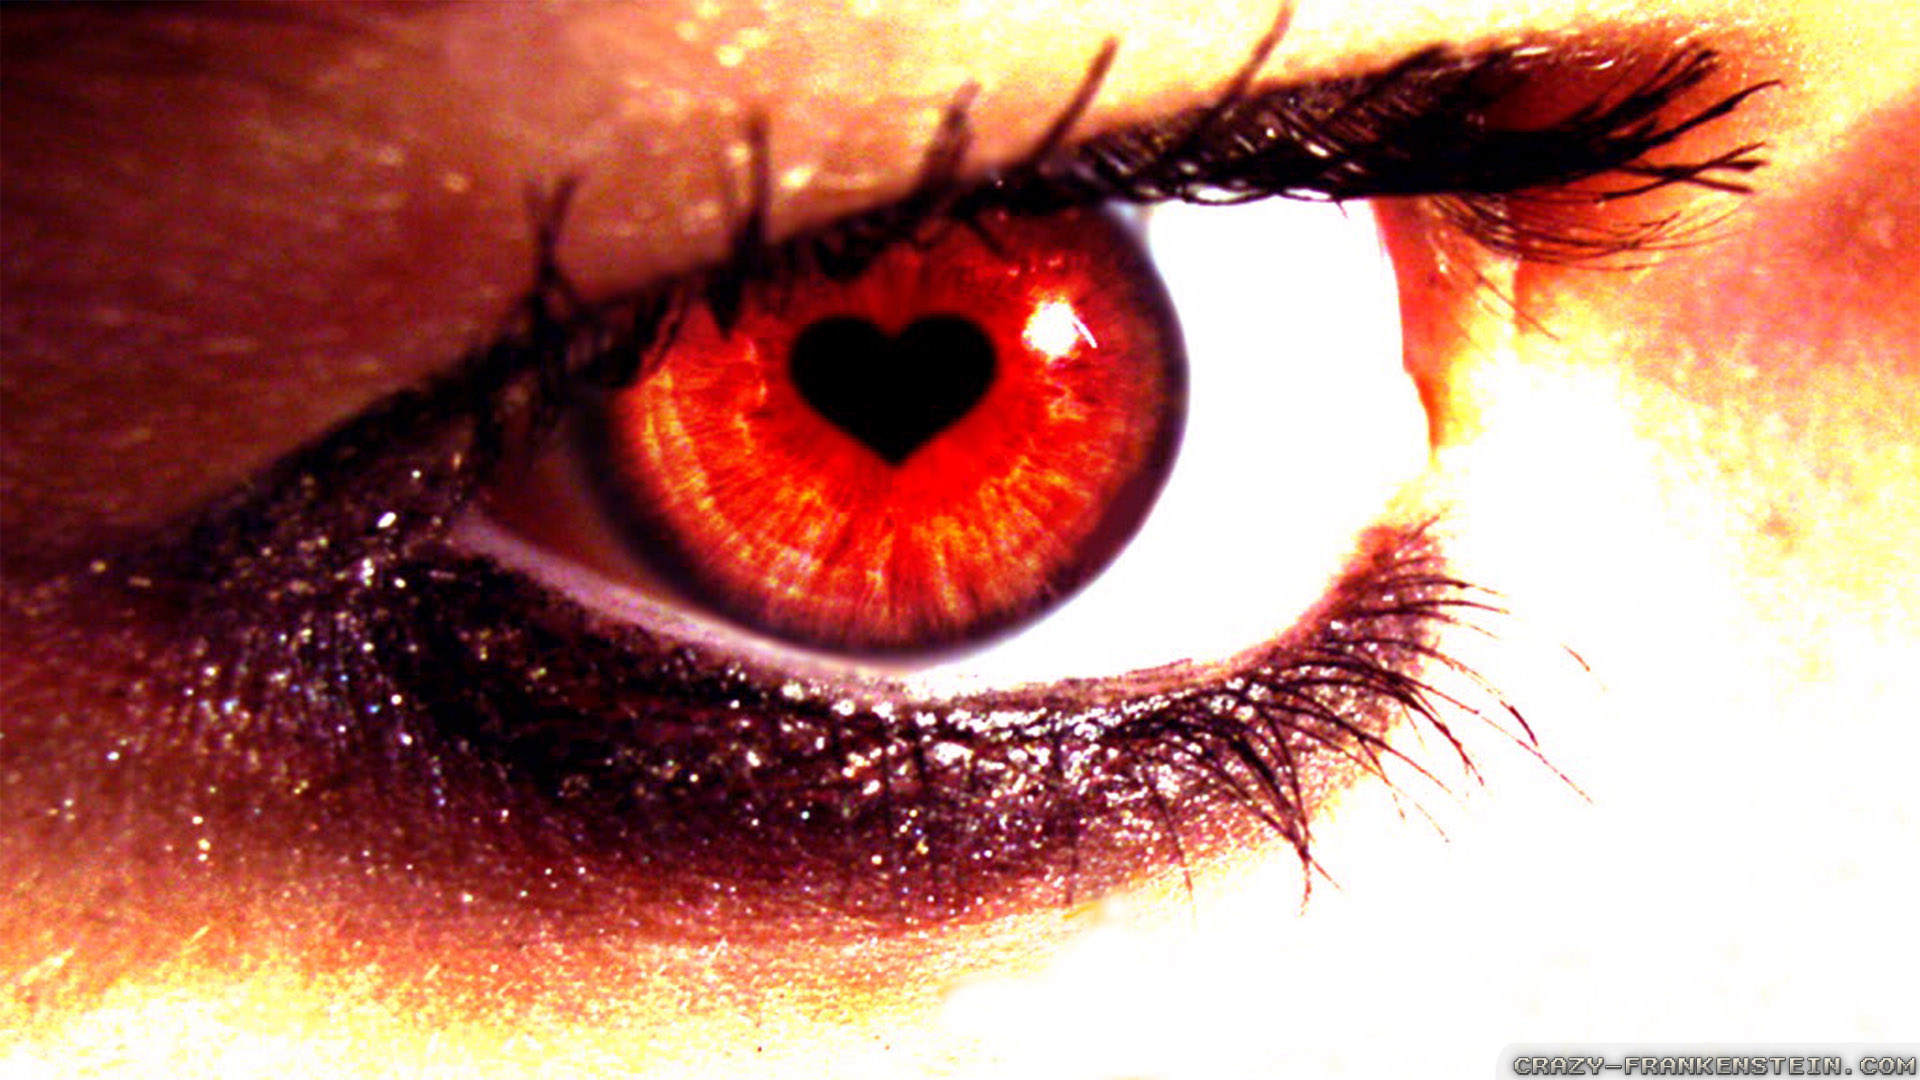 愛の目壁紙,眼,虹彩,閉じる,まつげ,赤